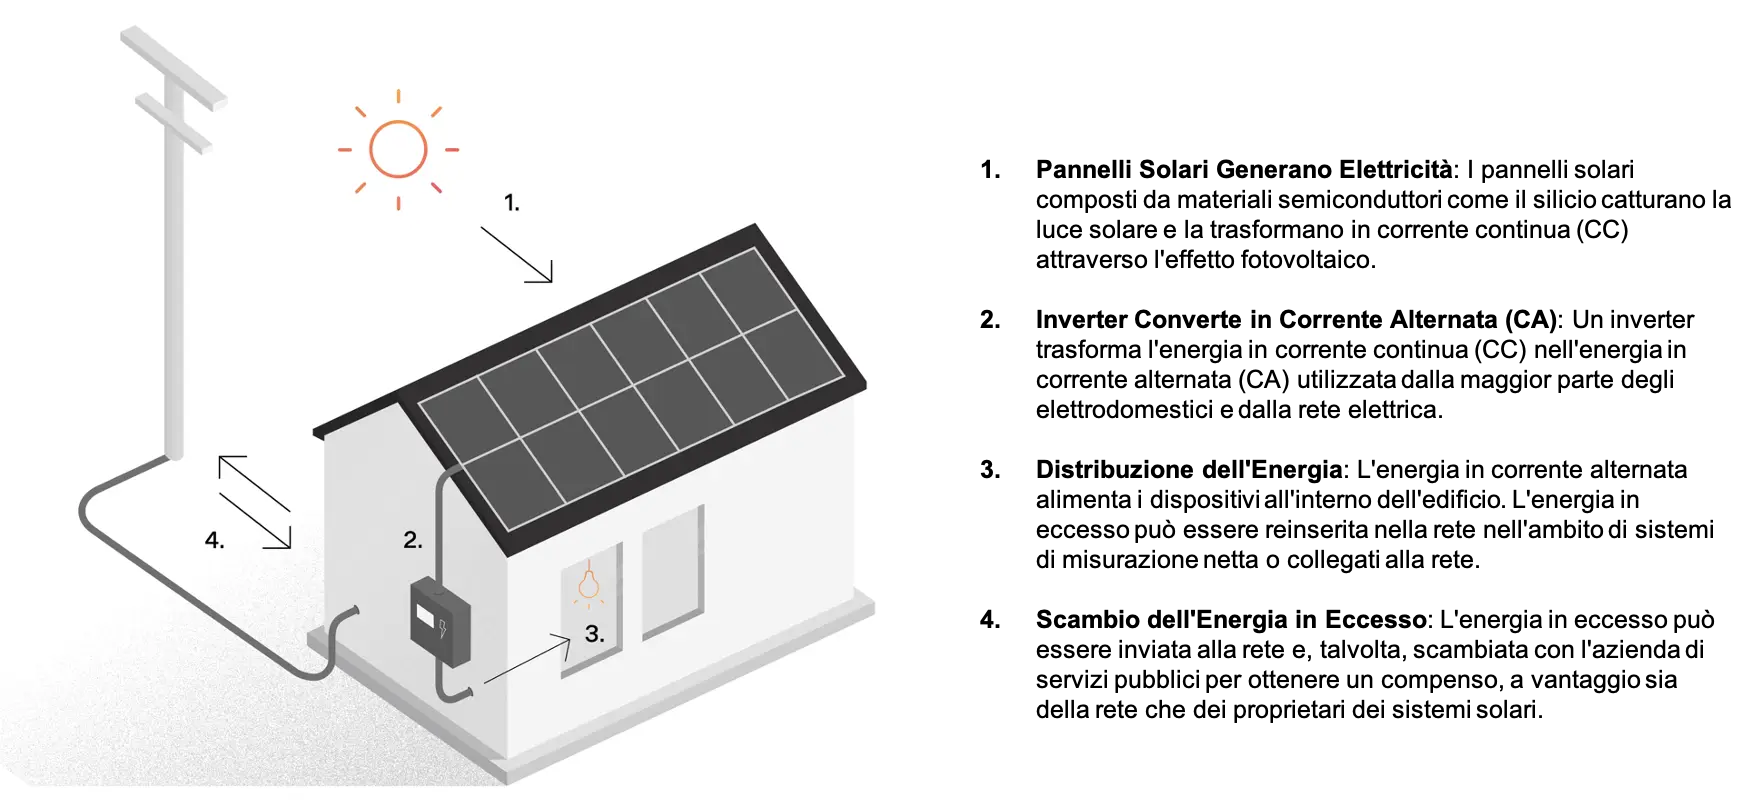 Come funzionano gli impianti fotovoltaici?